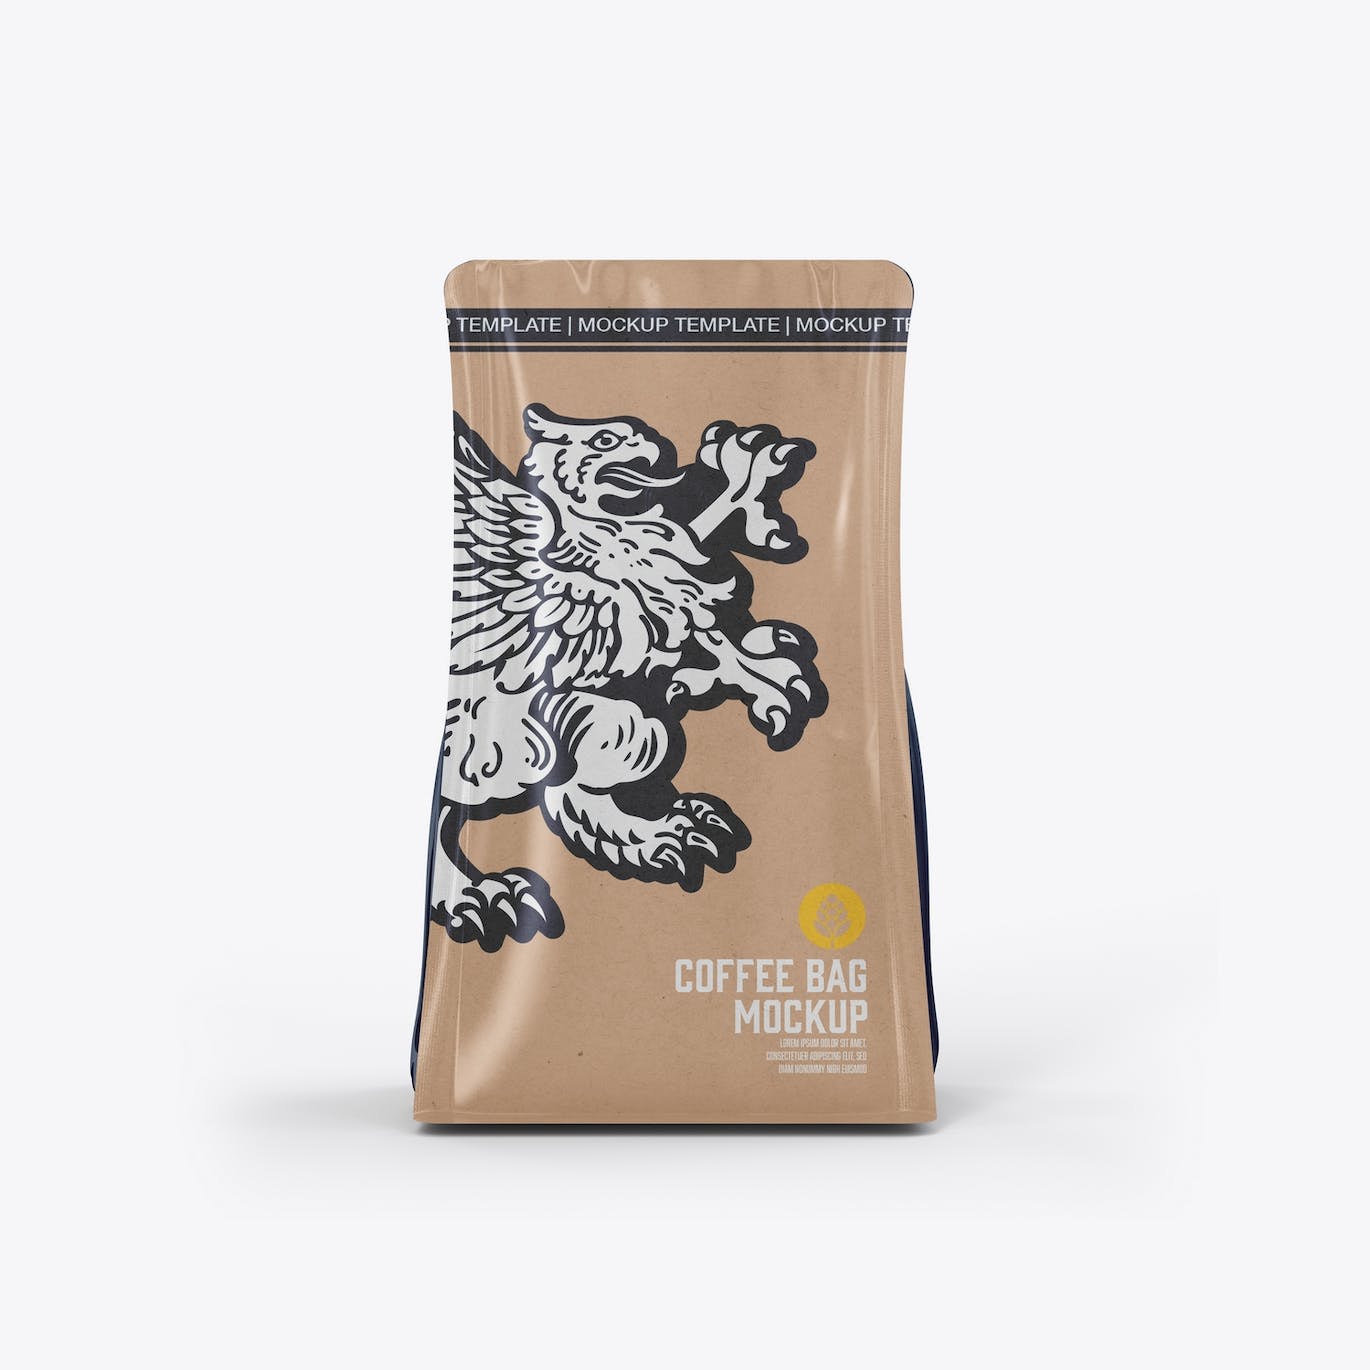 牛皮纸咖啡袋包装展示样机图 Set Kraft Paper Coffee Bag Mockup 样机素材 第3张